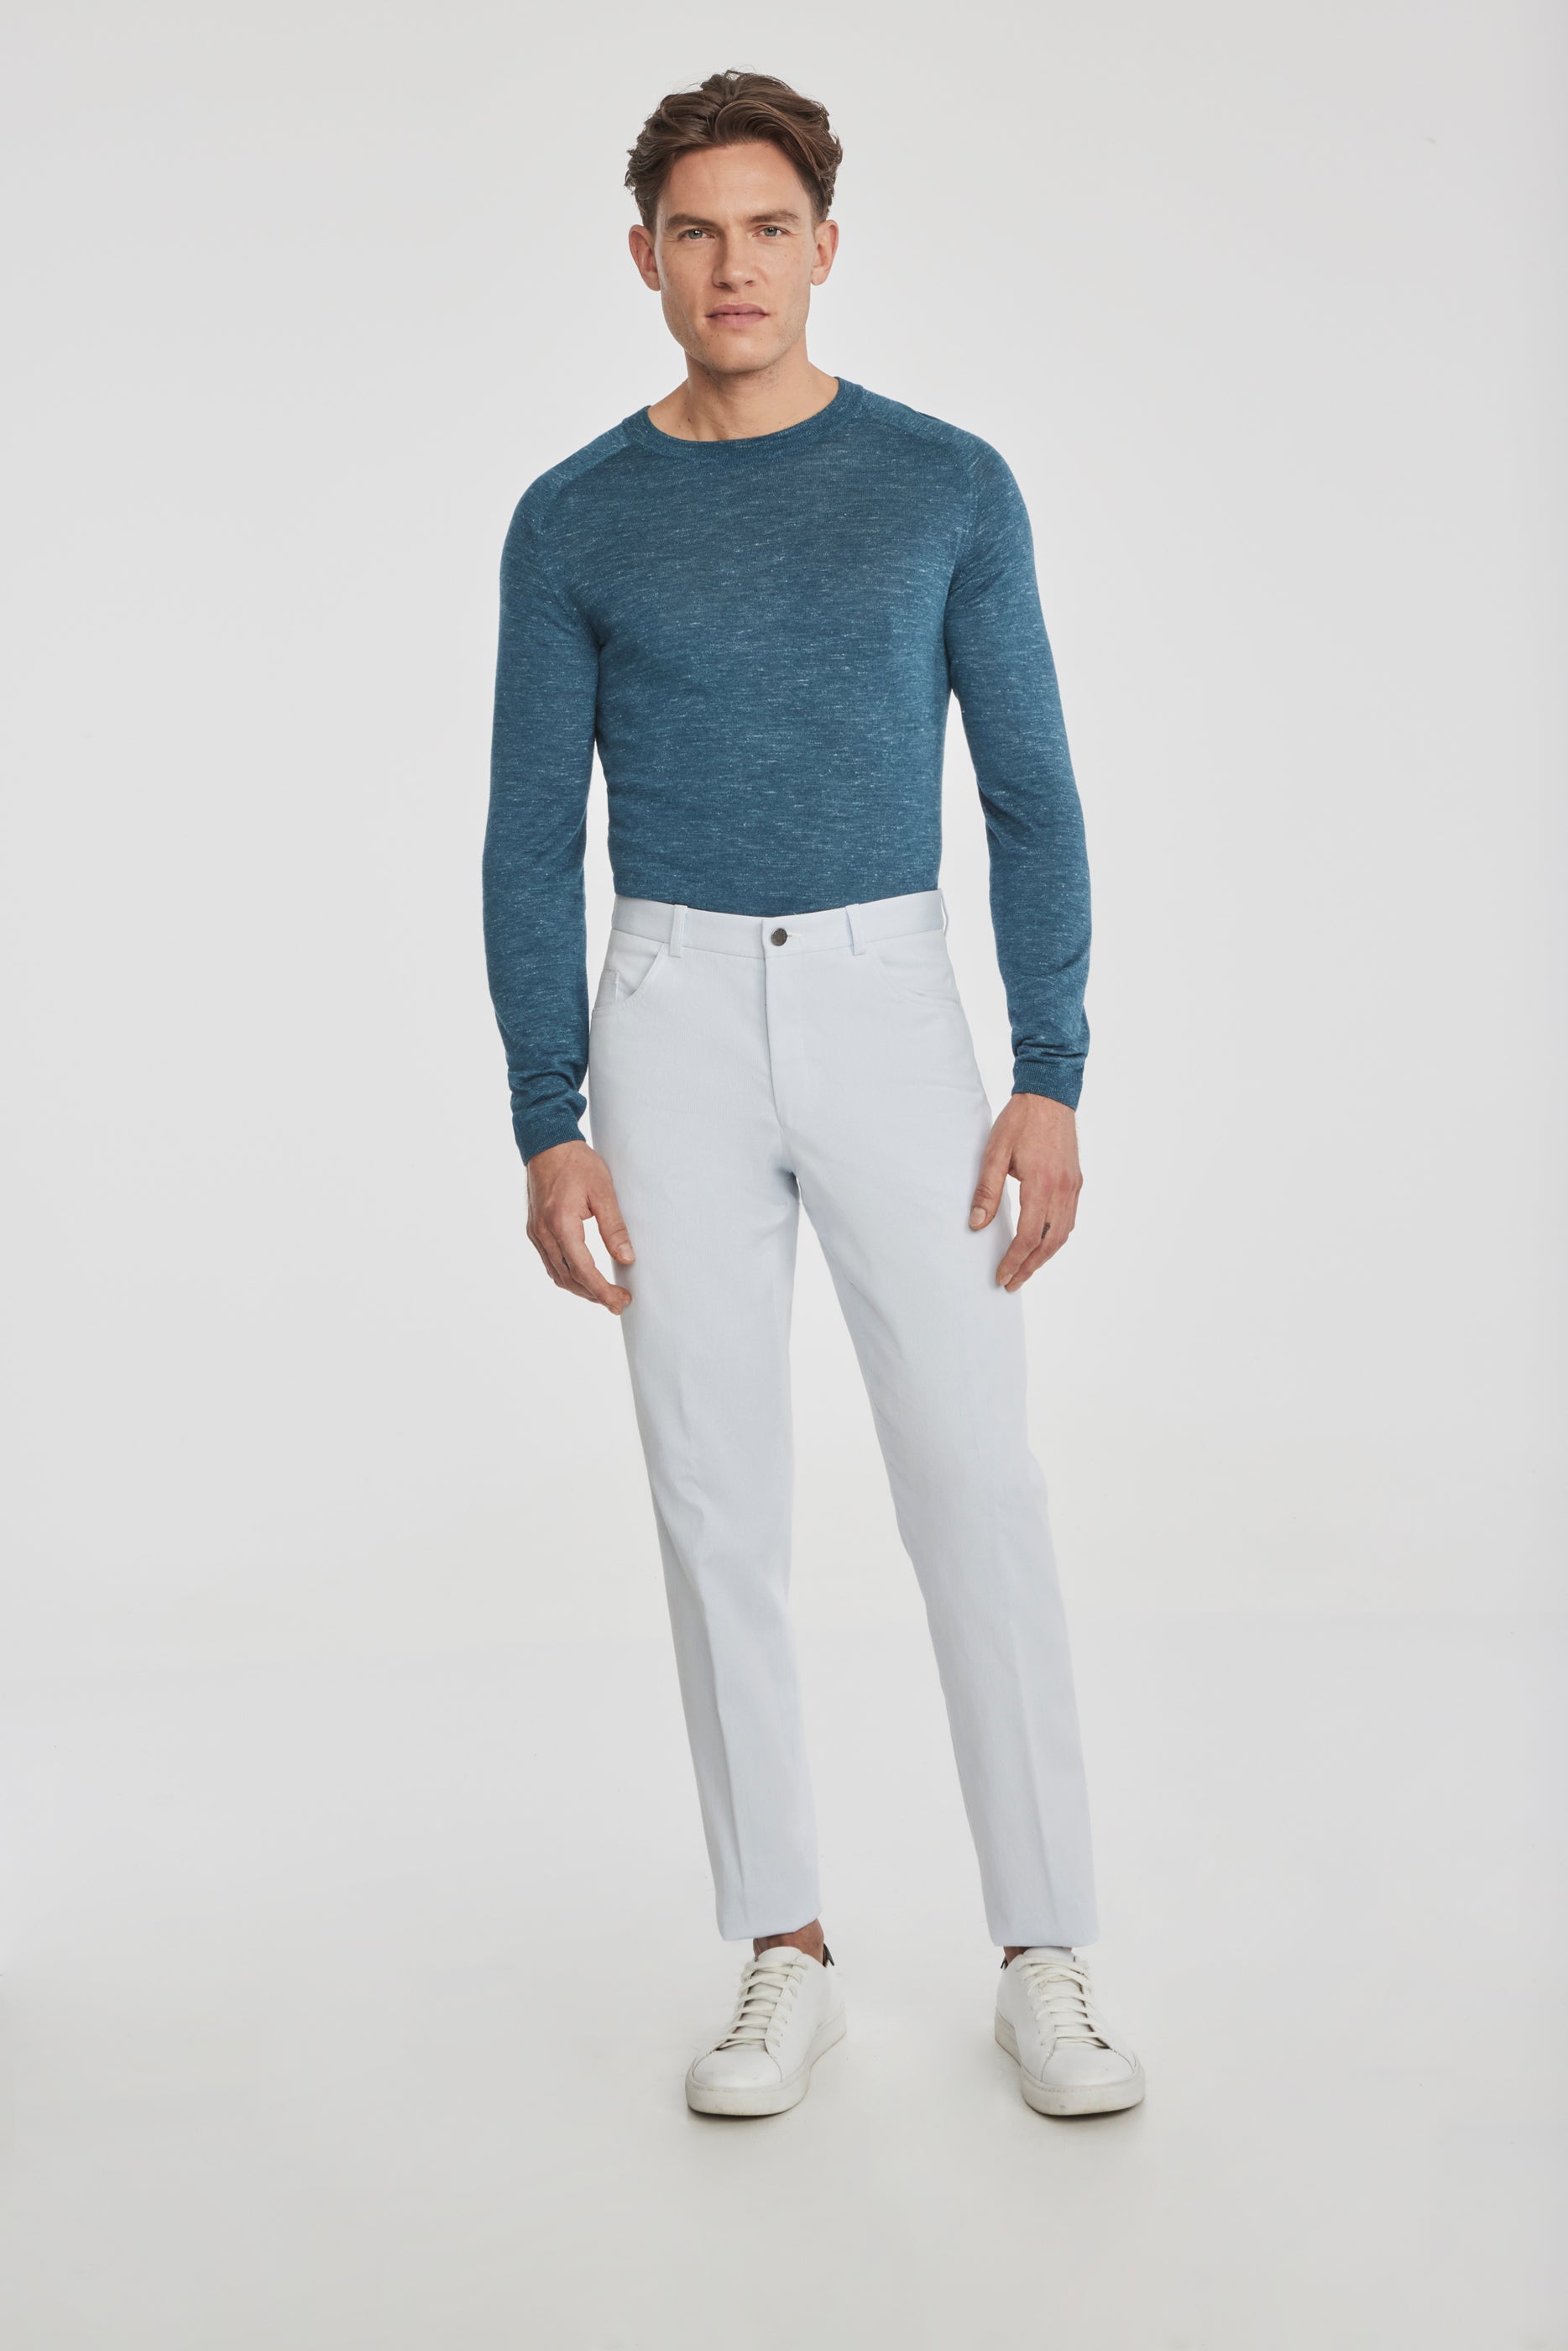 Vue alternative 1 Pantalon bleu clair en plumes d'épingle en coton extensible 5 poches Sage